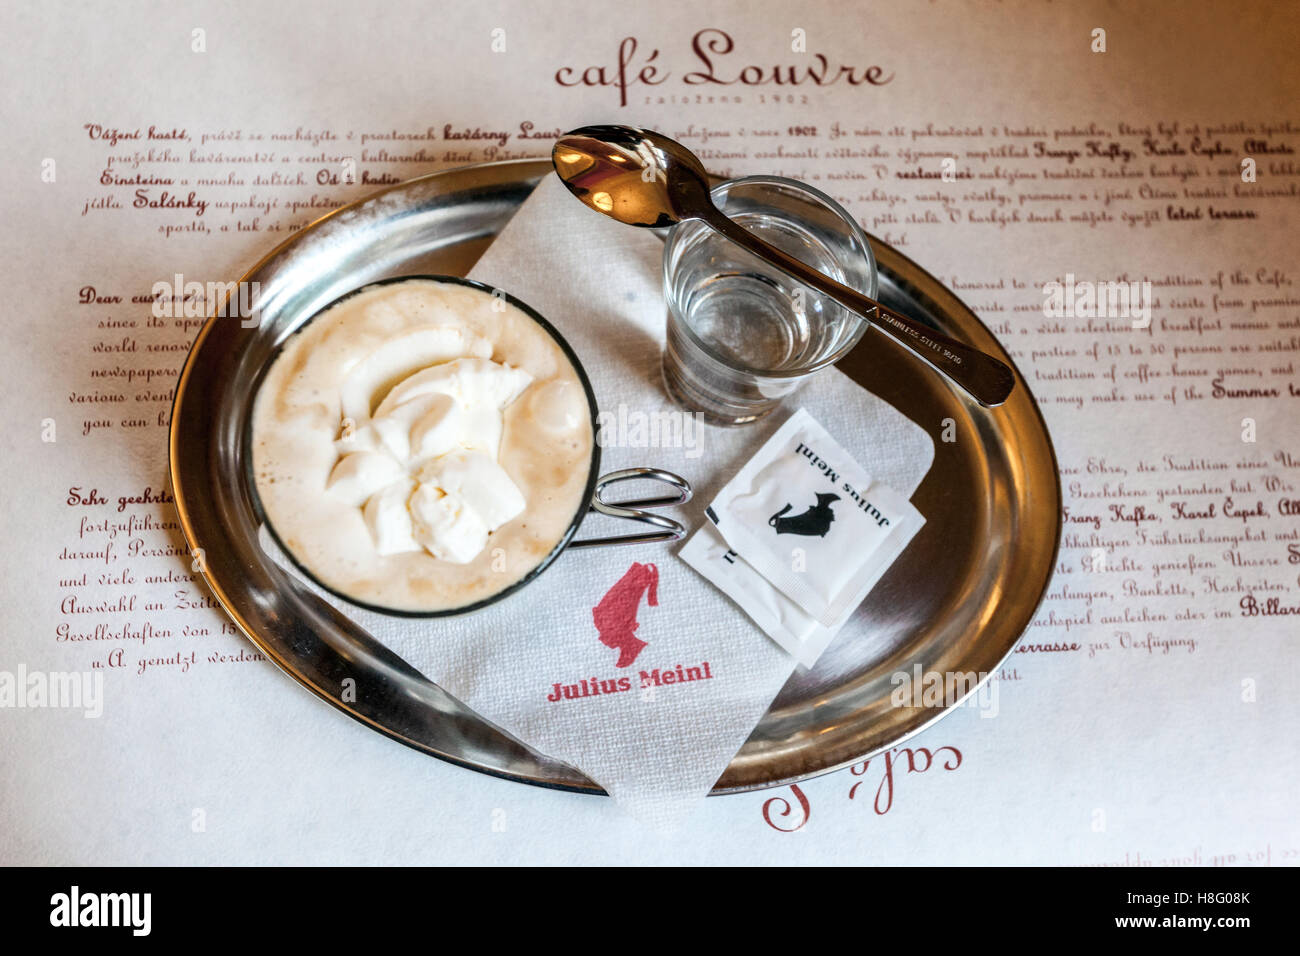 Caffè viennese bicchiere d'acqua sul vassoio Prague Cafe Louvre caffè di Praga Foto Stock